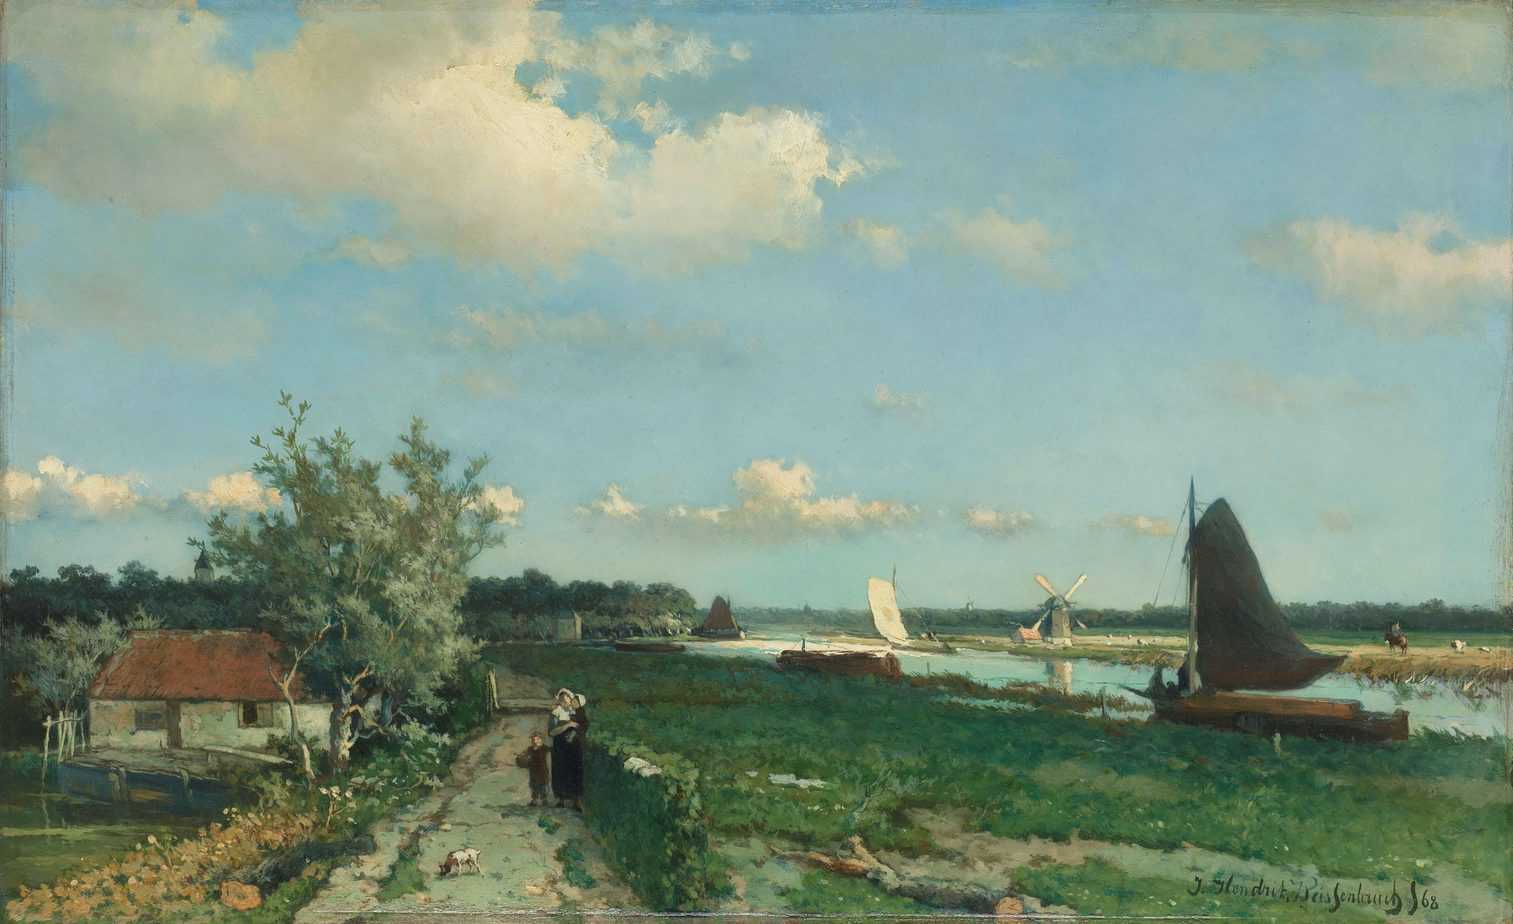 The Trekvliet Shipping Canal near Rijswijk, known as the ‘View near the Geest Bridge’, Johan Hendrik Weissenbruch, 1868